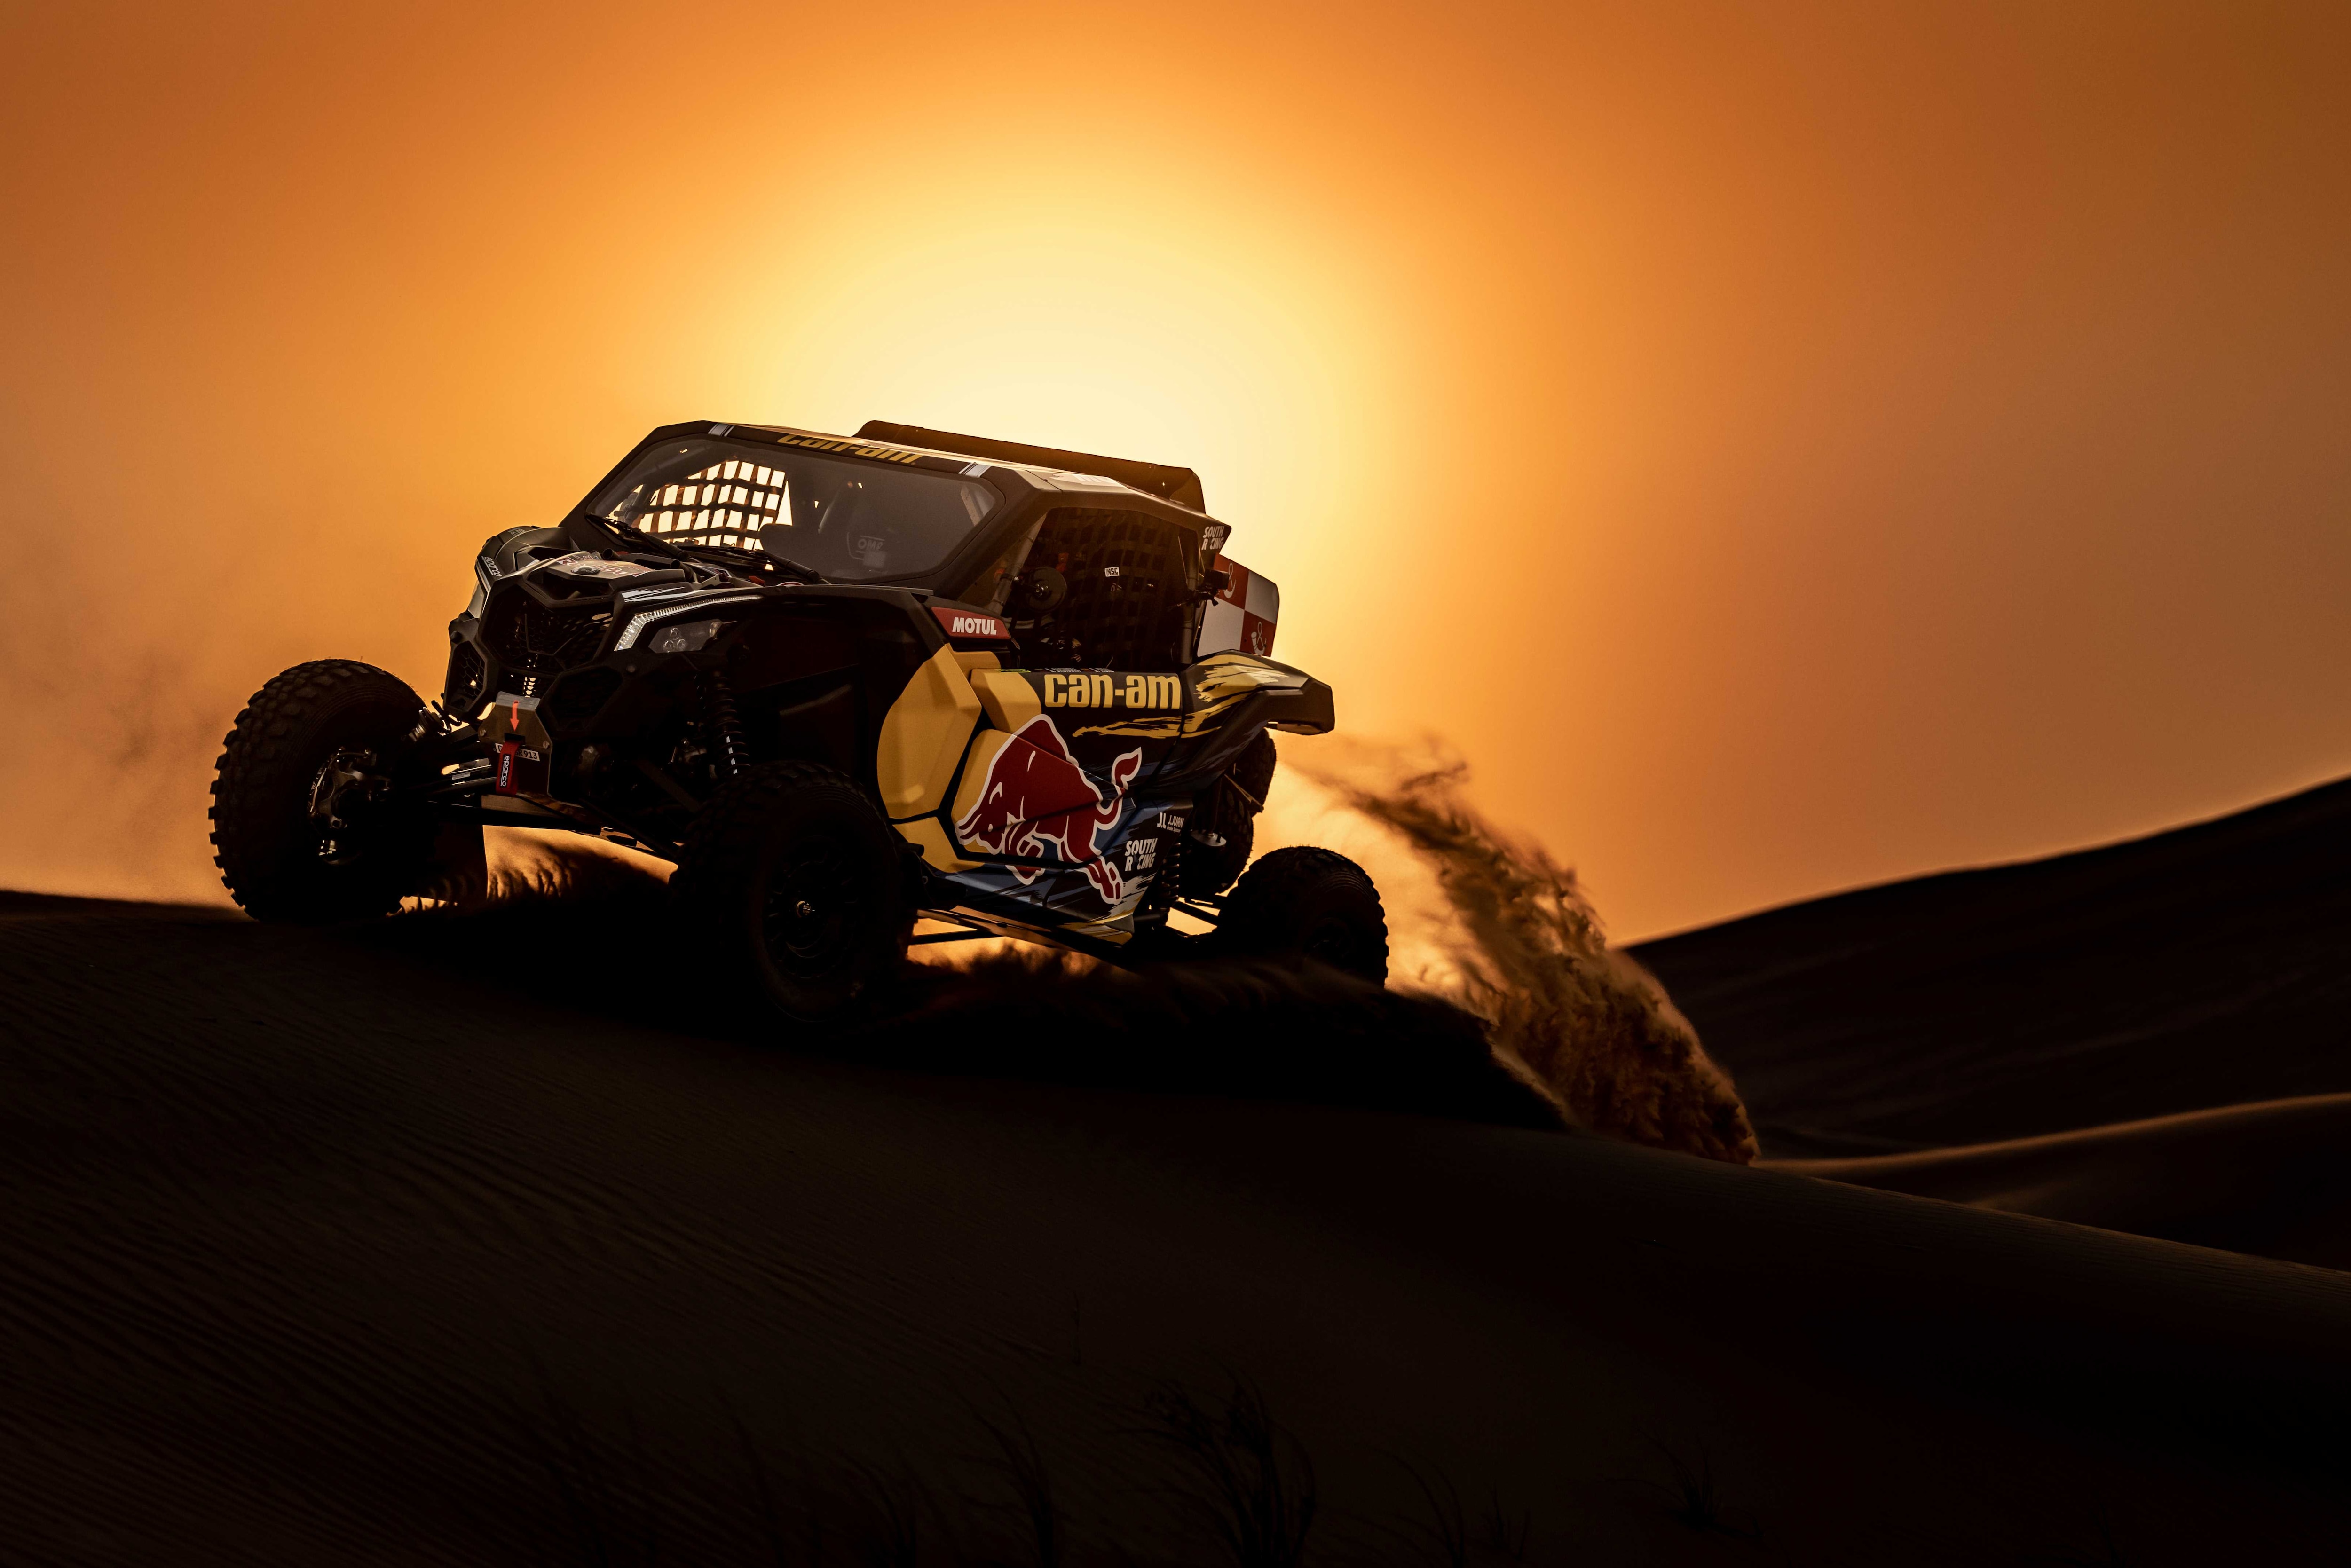 Image impressionnante du Maverick X3 dans le désert au crépuscule